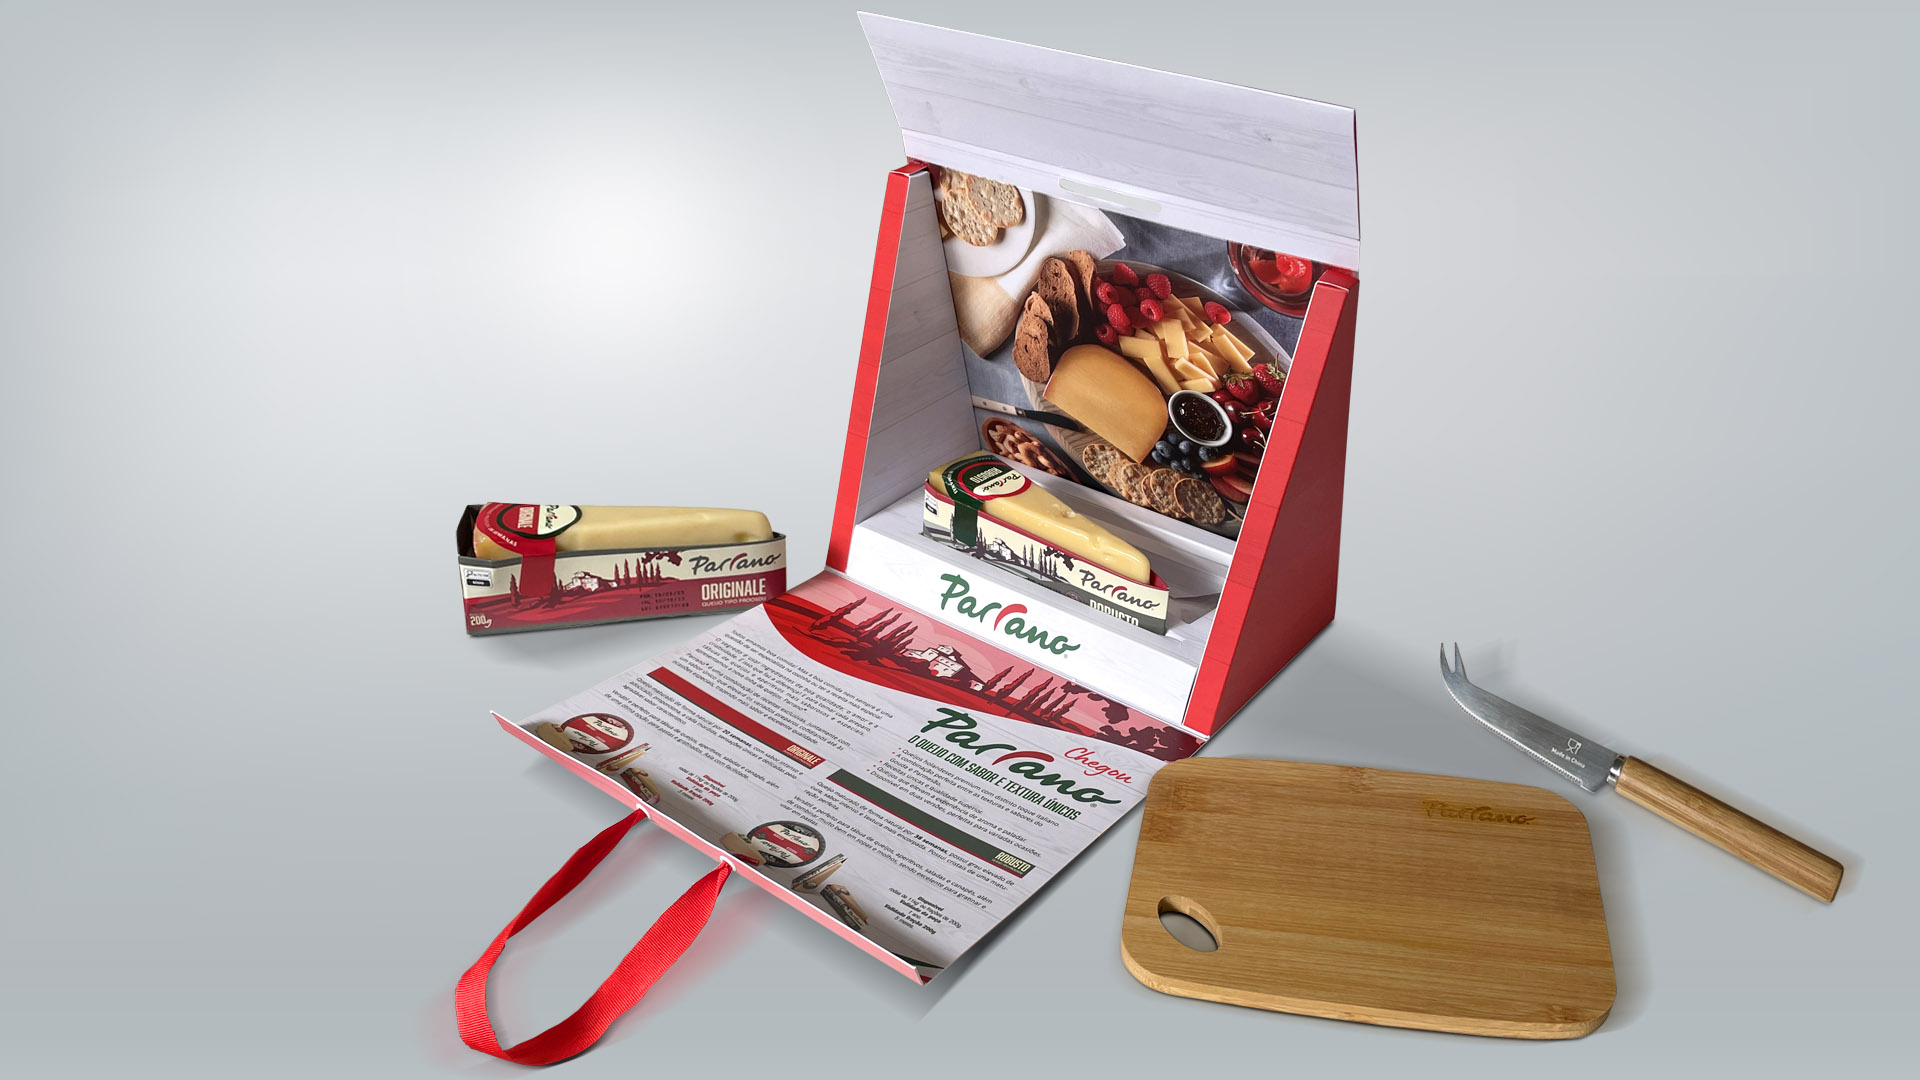 Imagem do sales kit da campanha de lançamento da marca Parrano no Brasil desenvolvida pelo Estúdio E | Agência de Comunicação